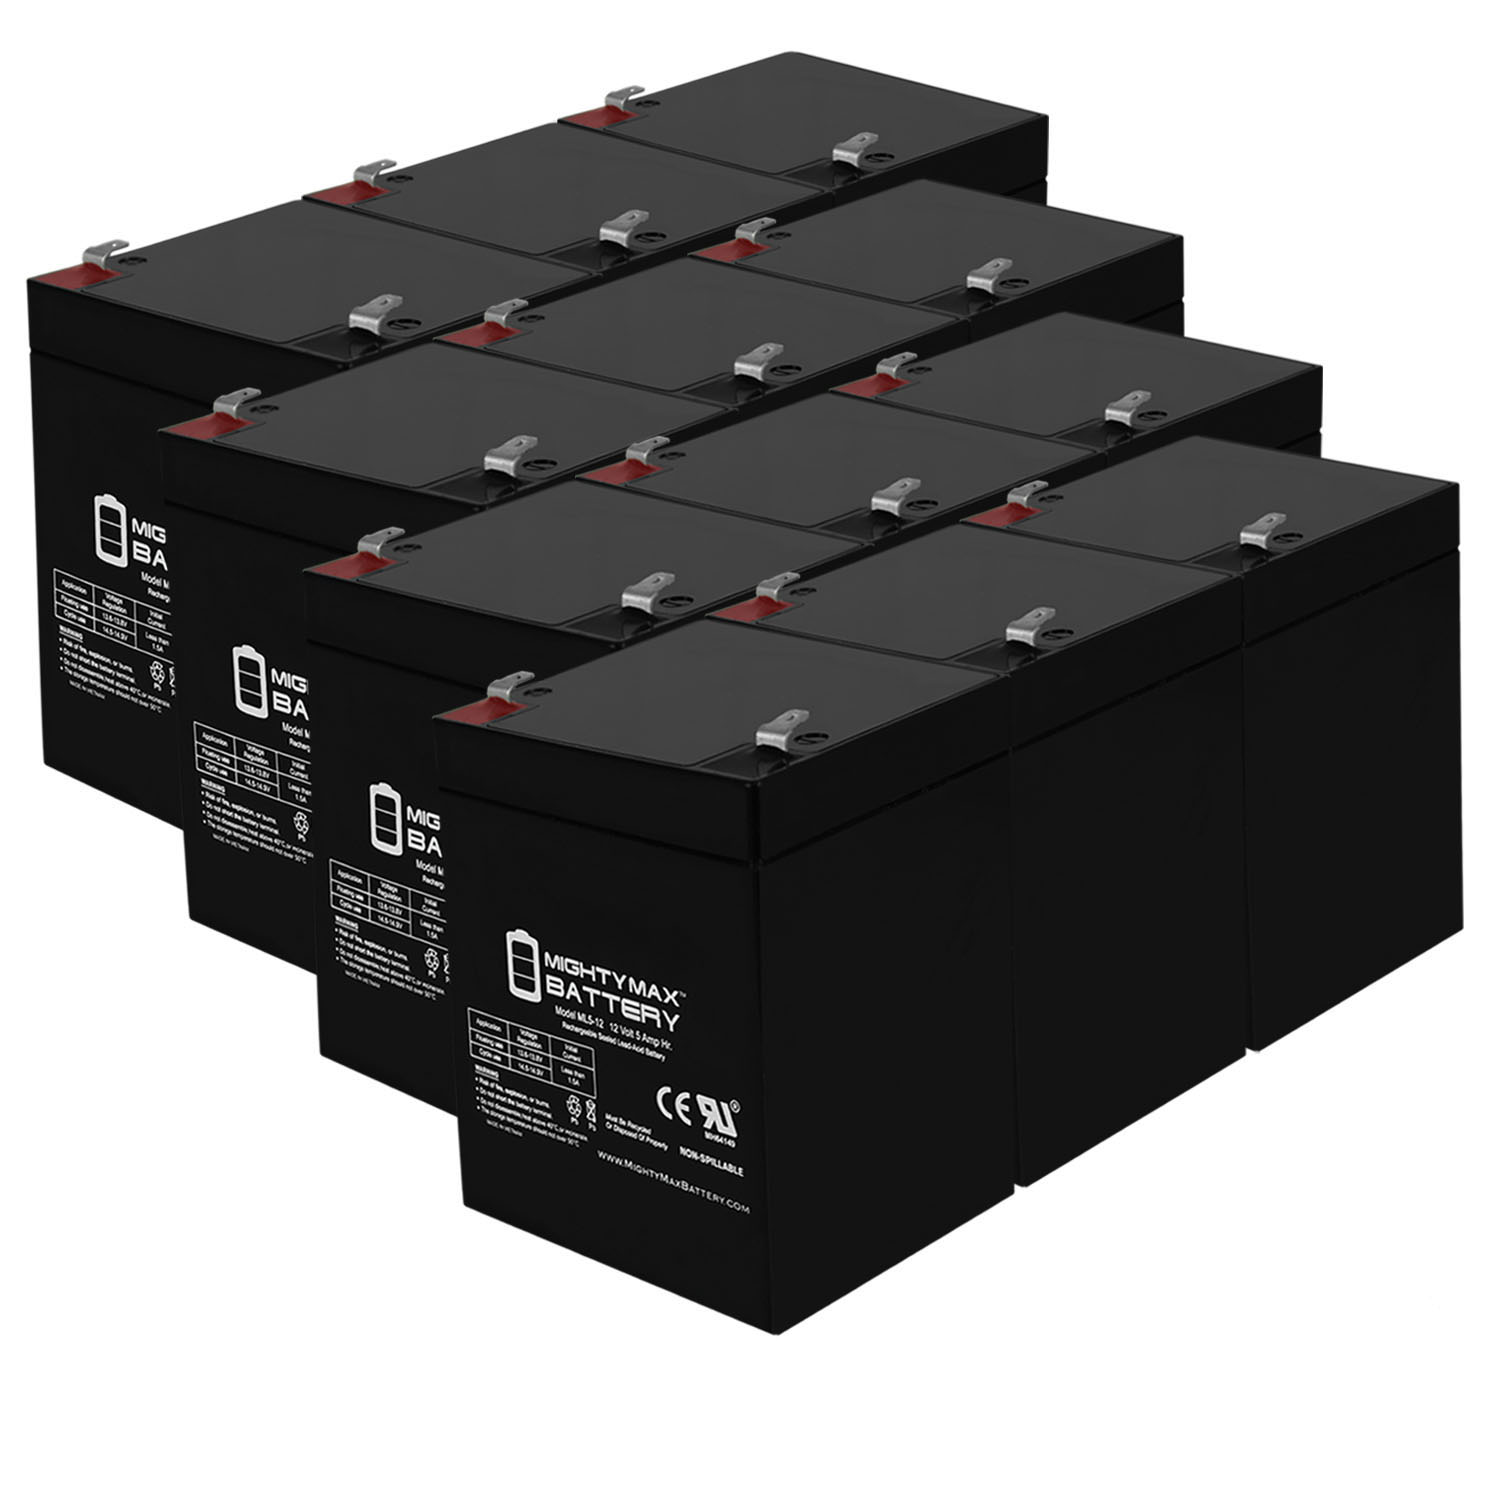 12V 5AH SLA Replacement Battery for Ugen UB1250 - 12 Pack